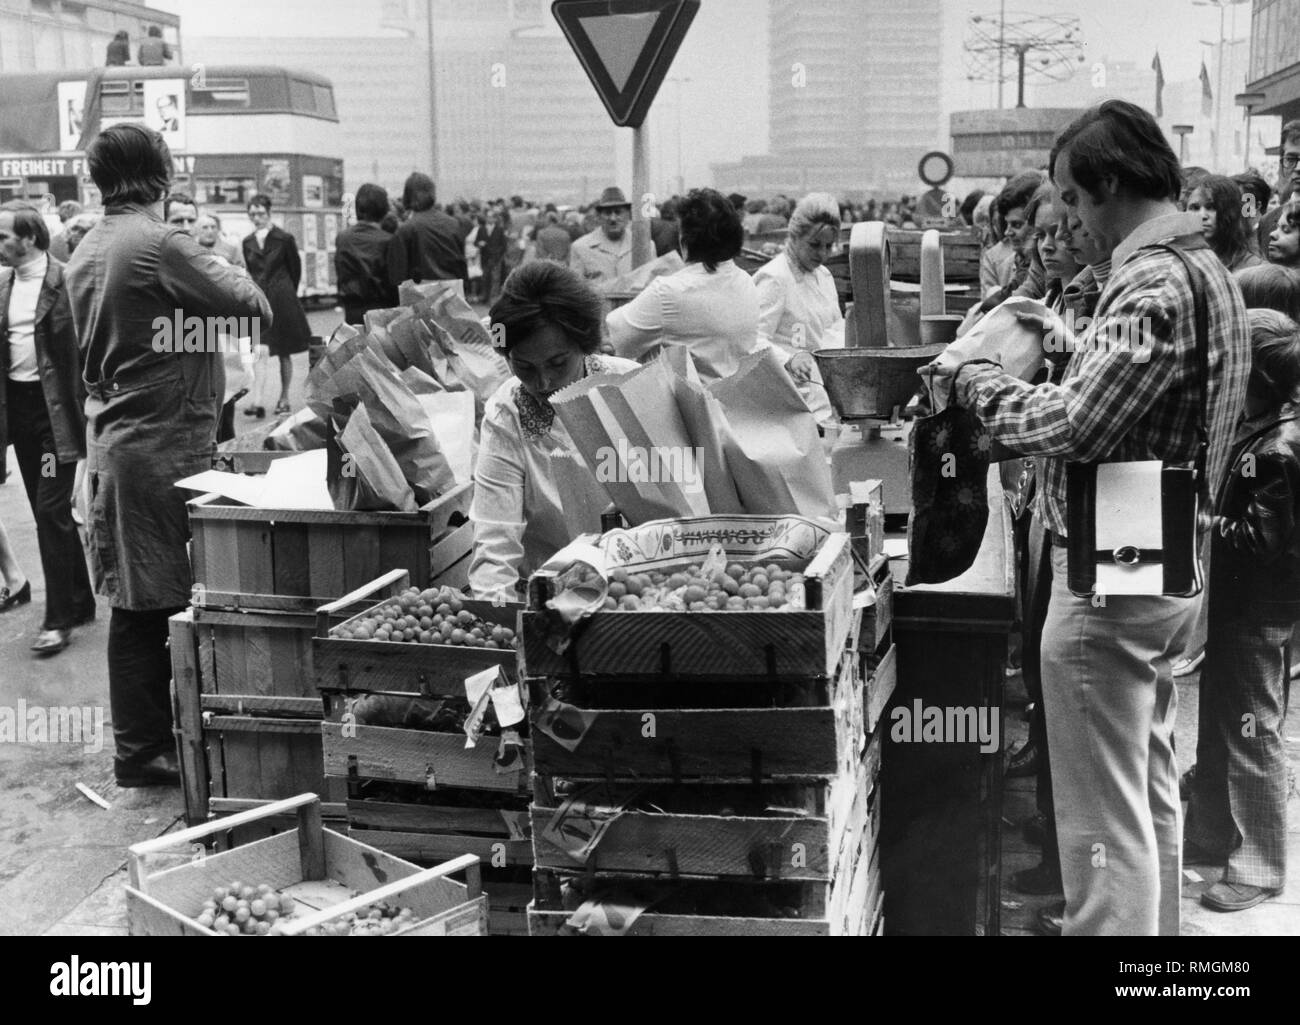 Eine Verkäuferin setzt Trauben in eine Tasche an einem Obststand auf dem Alexanderplatz in Ost-Berlin für den Kunden. Rechts im Hintergrund die Urania Weltzeituhr. Undatiertes Foto. Stockfoto